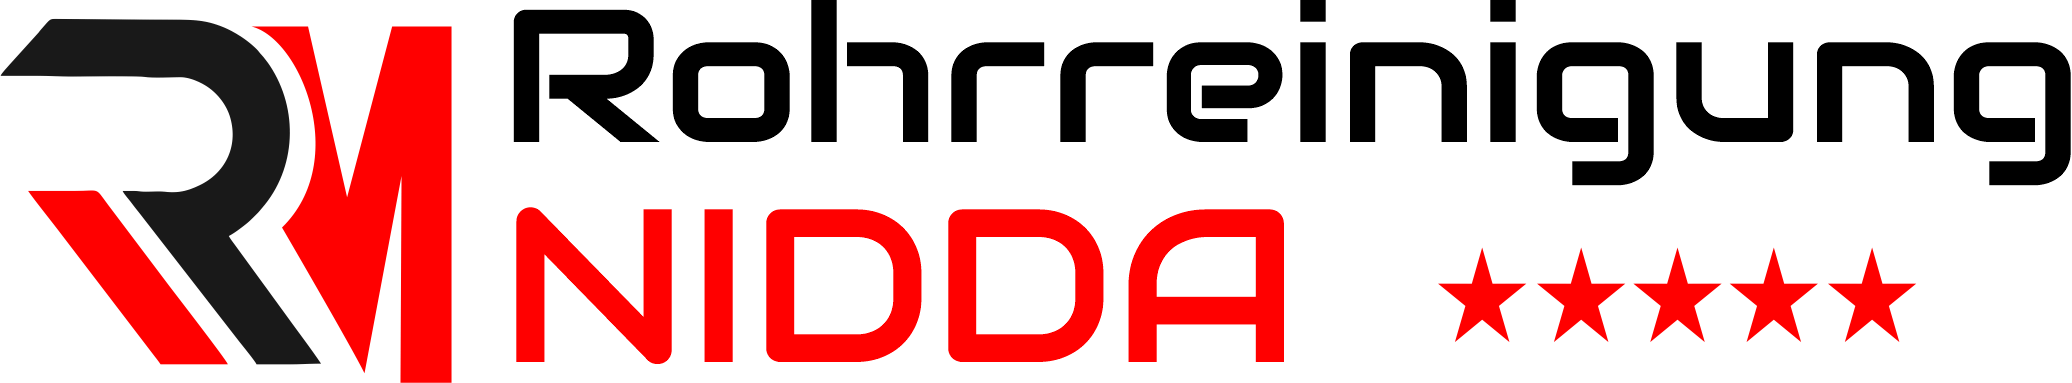 Rohrreinigung Nidda Logo